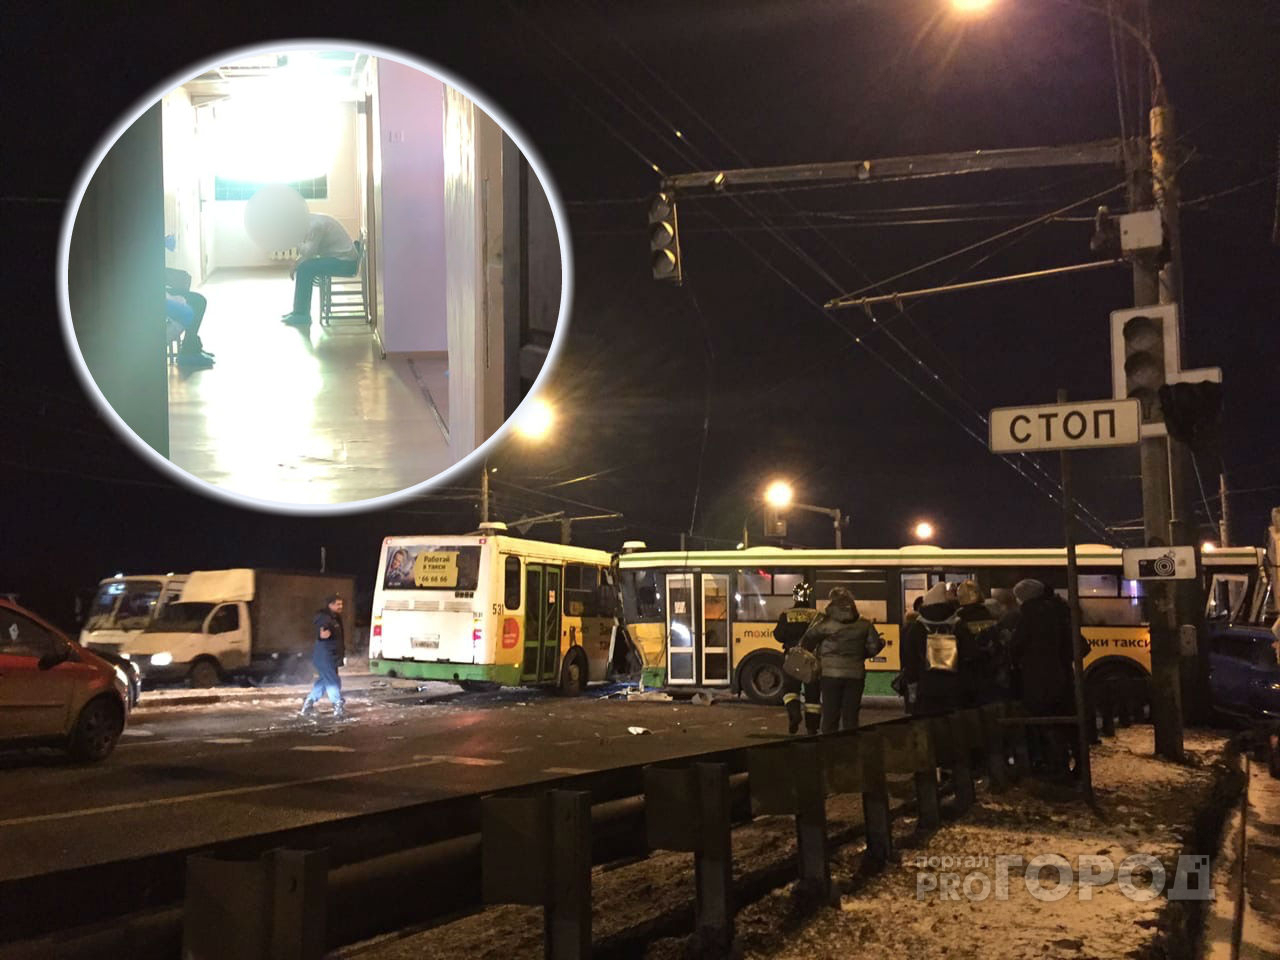 Допрашивают на больничной койке: что стало с водителем "автобуса-убийцы" в Ярославле